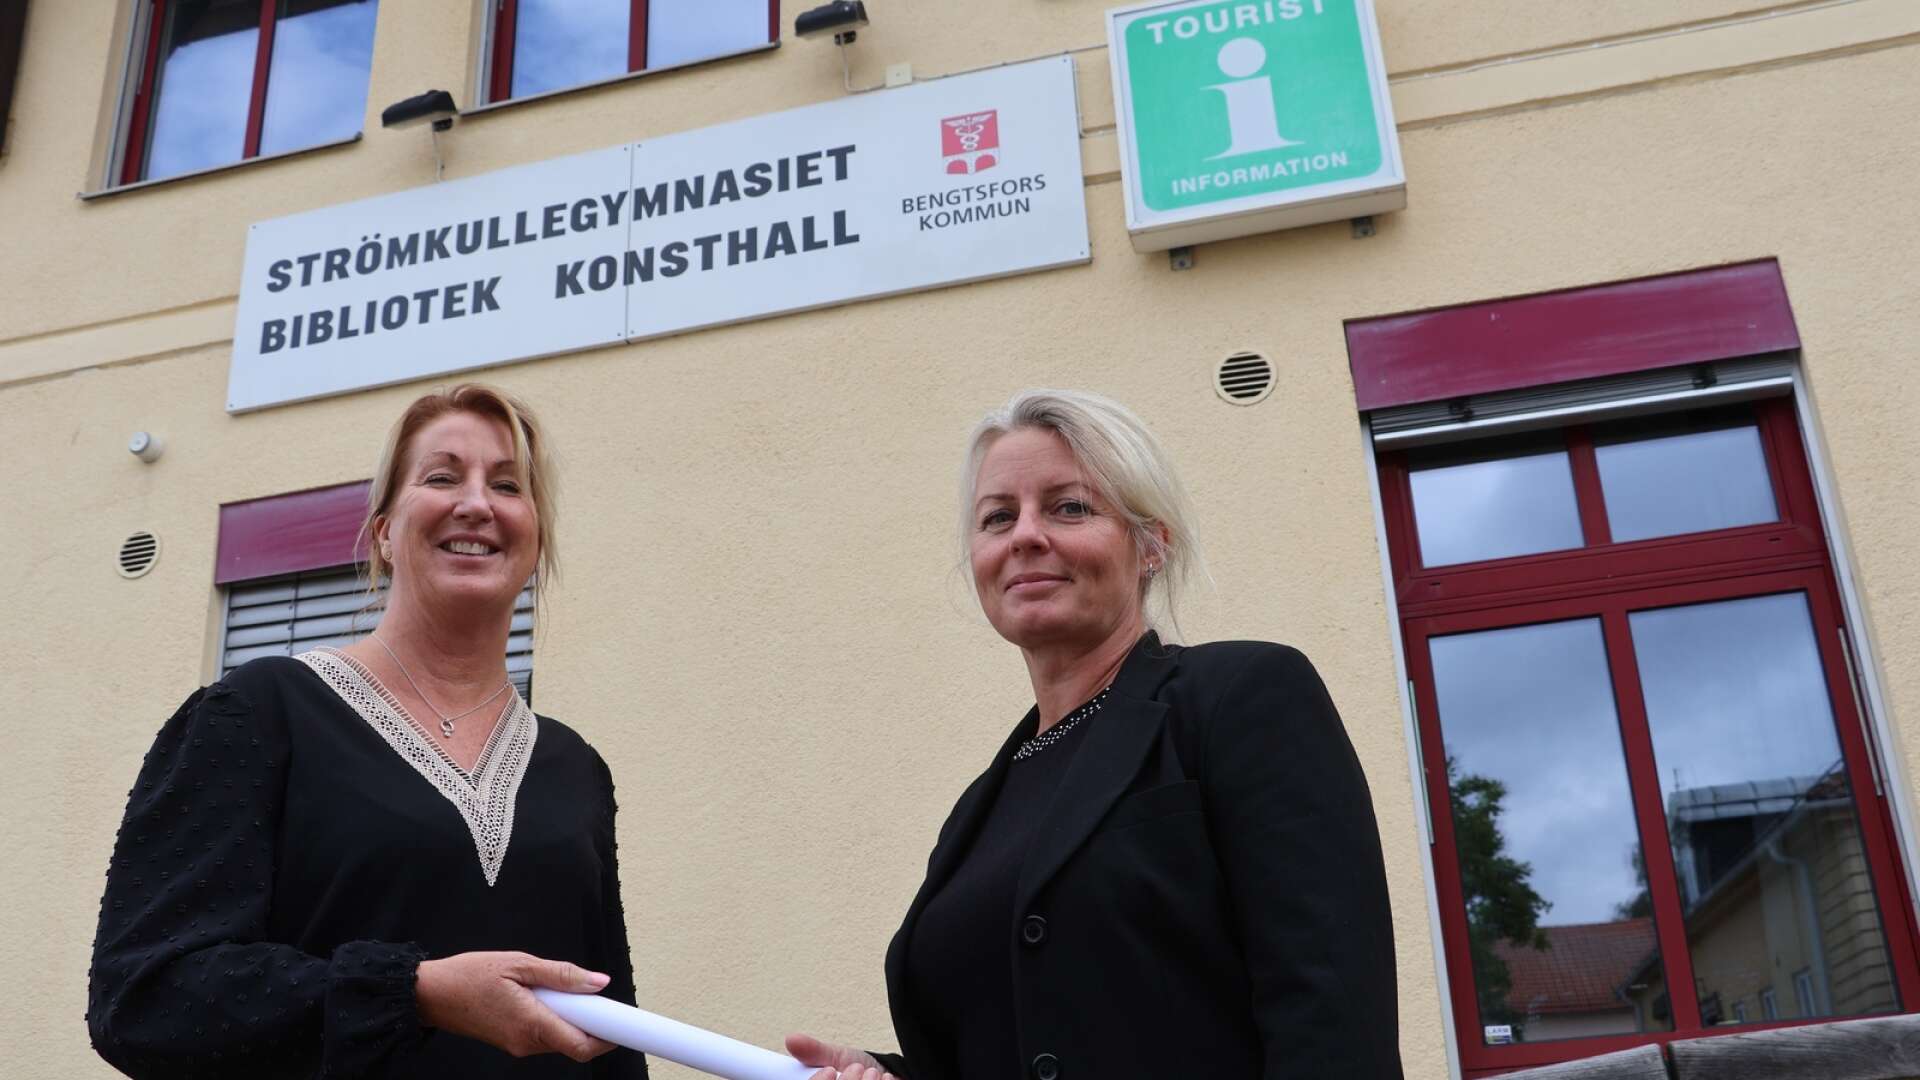 Jeanette Högsähf (till höger) tar över stafettpinnen efter Jeanette Montgomery och blir ny rektor för Strömkullegymnasiet och vuxenutbildningen i Bengtsfors.